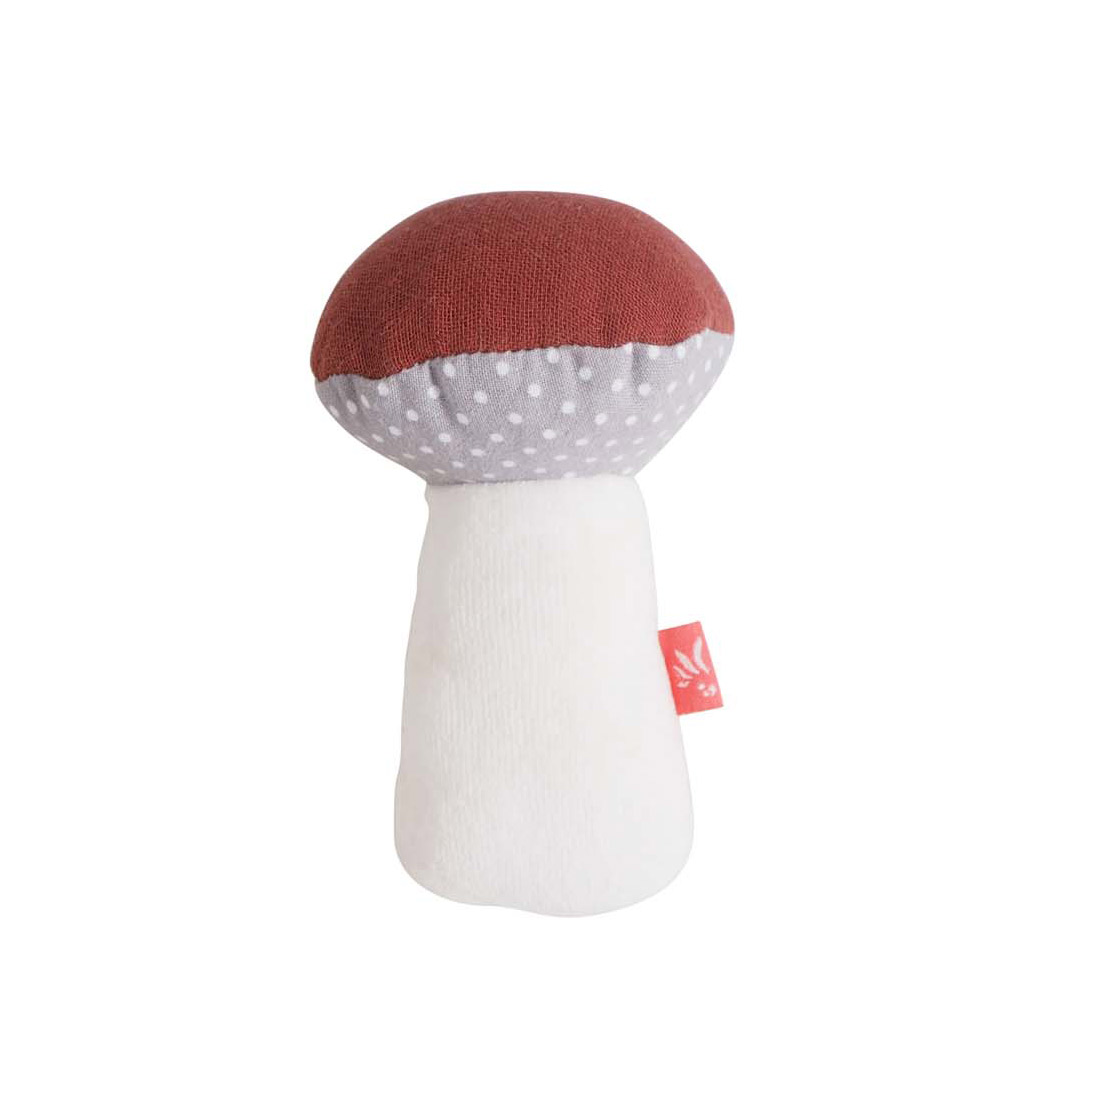 Squeaker Mushroom Dots GOTS